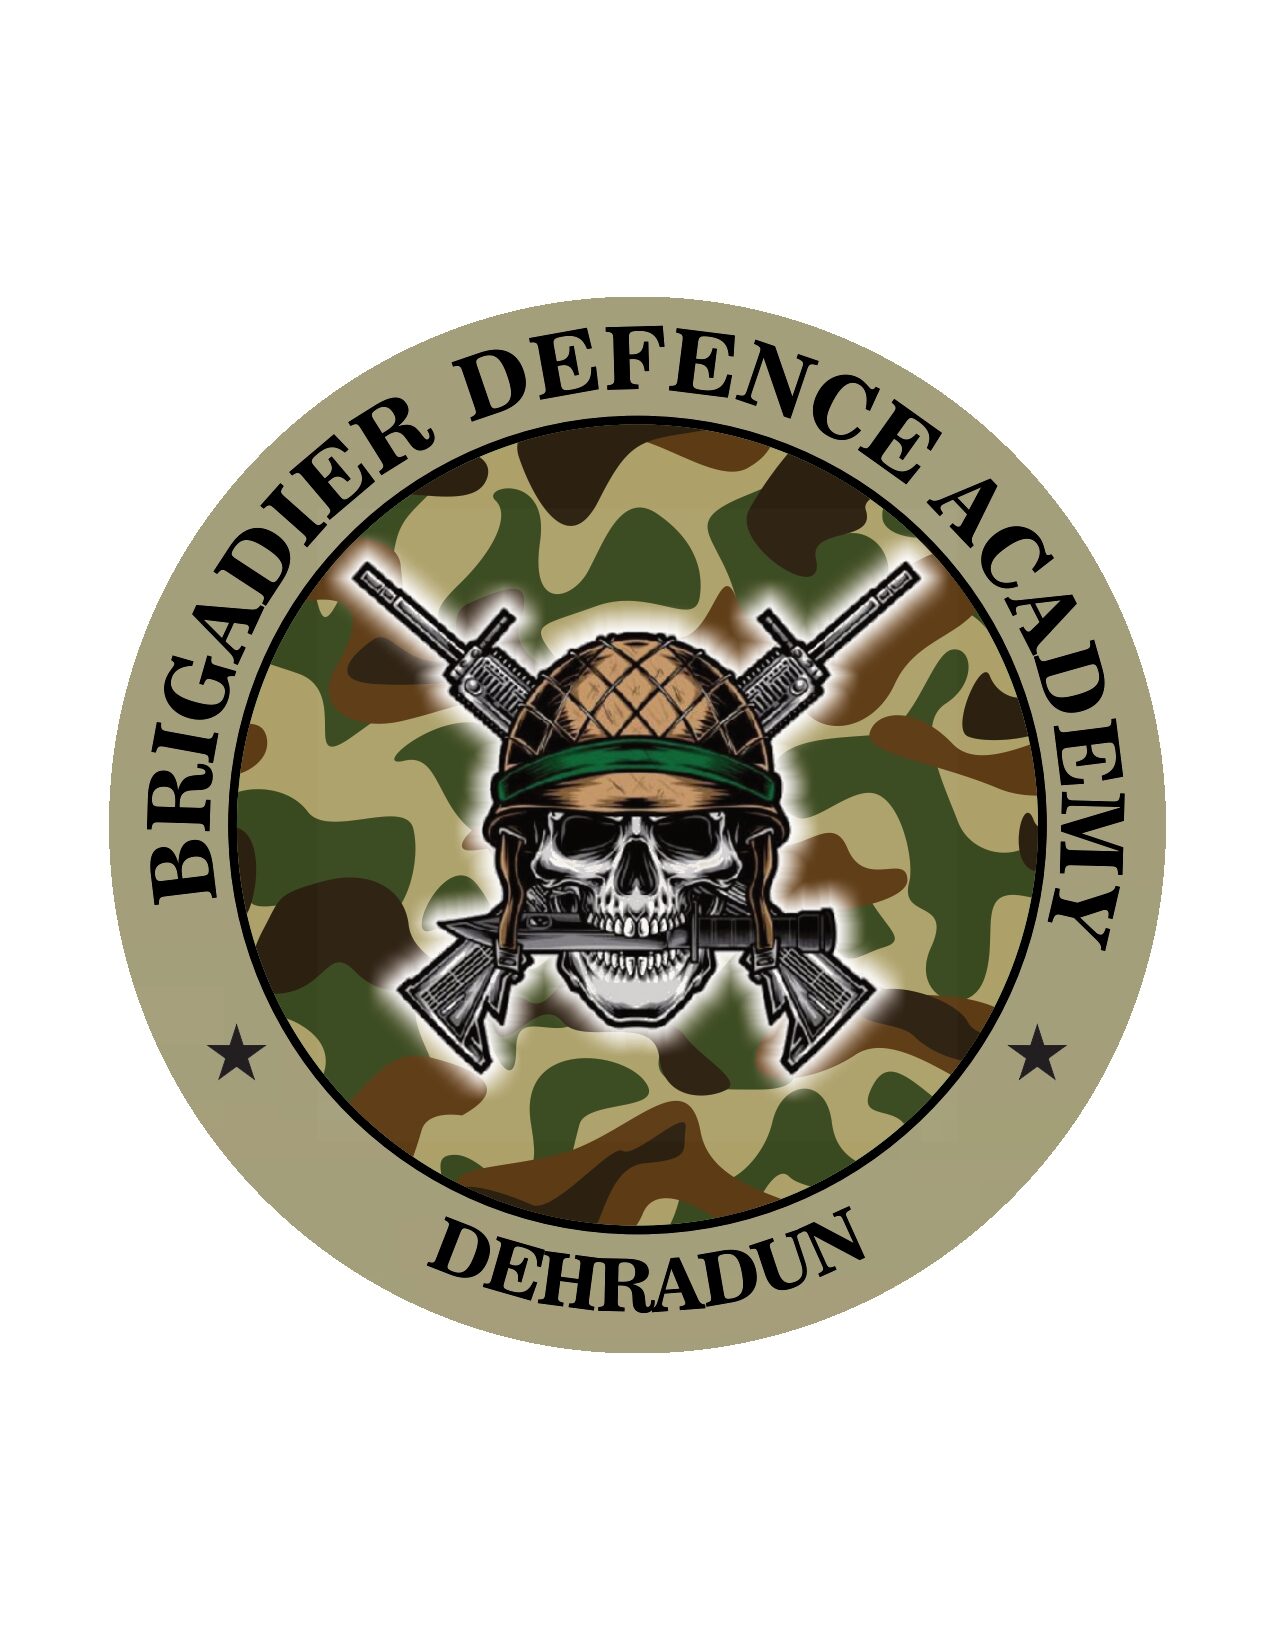 Brigadier’s Defence Academy